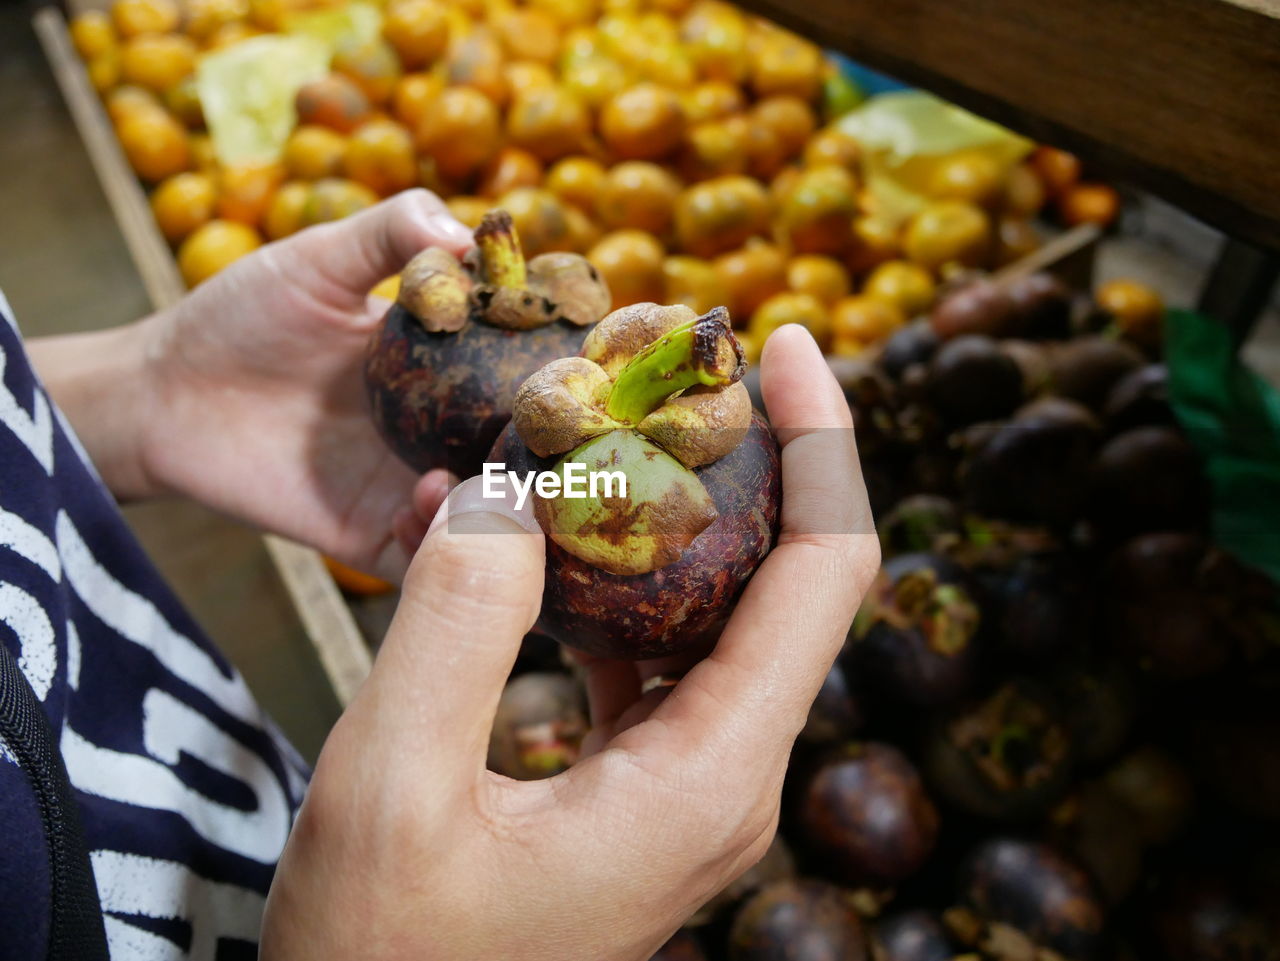 Woman hands holding mangosteen.mangosteen fruit in woman hand.closeup.asian fruit.